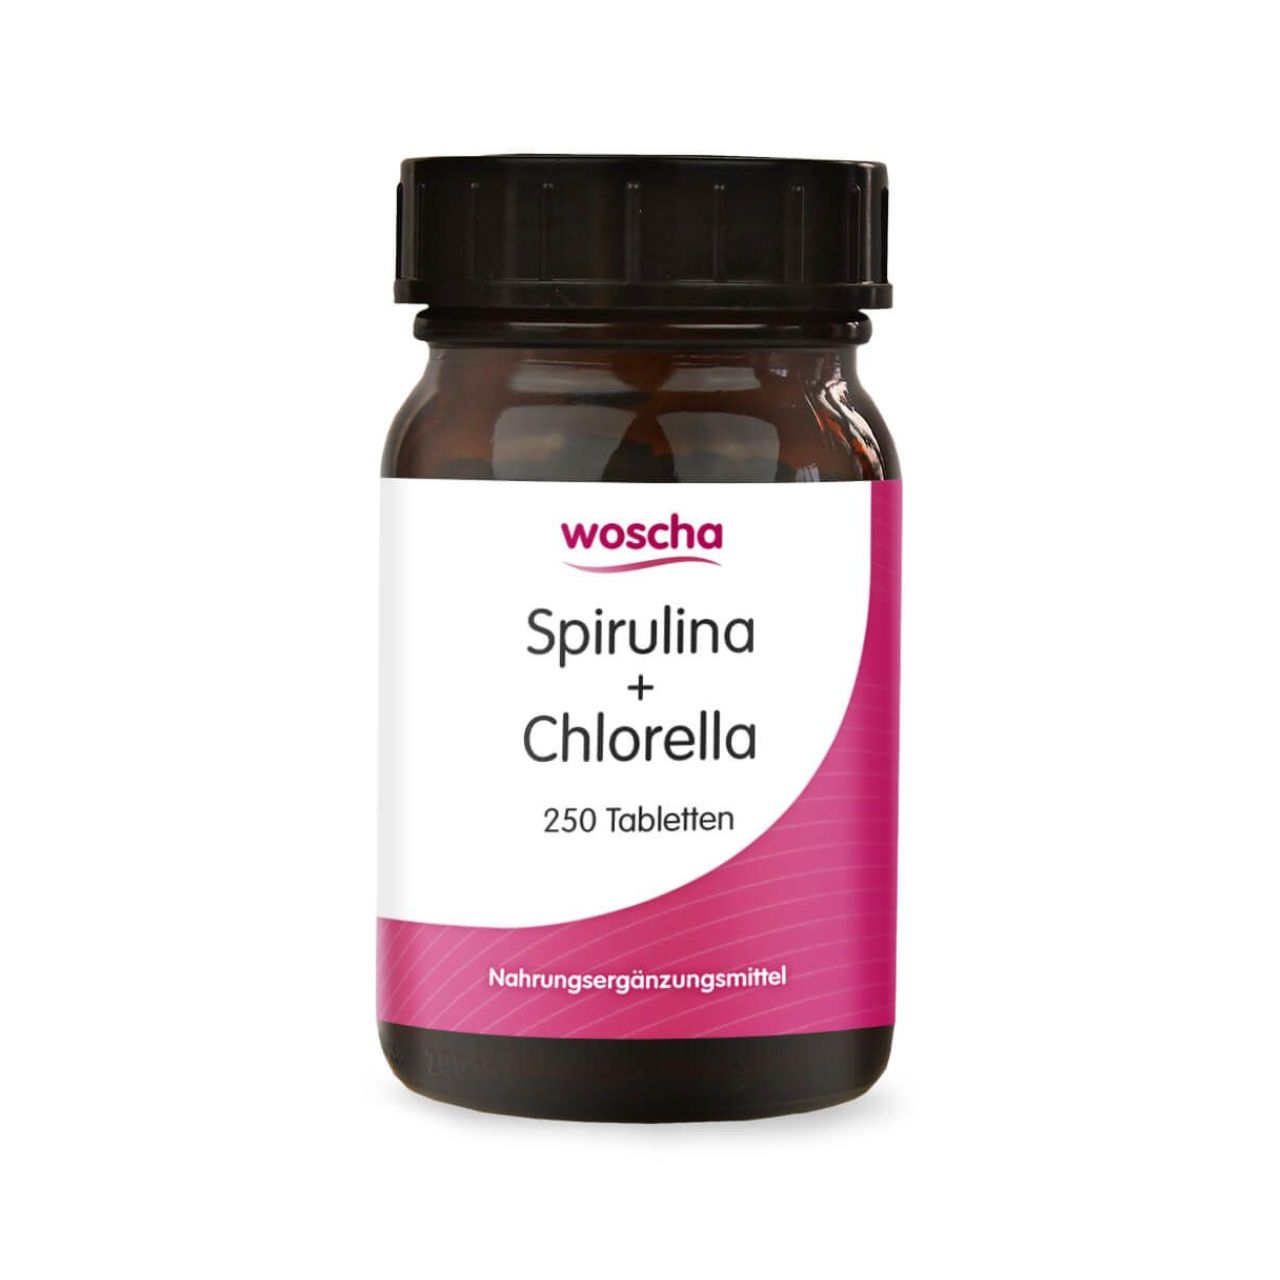 Woscha Spirulina + Chlorella von podo medi beinhaltet 250 Tabletten